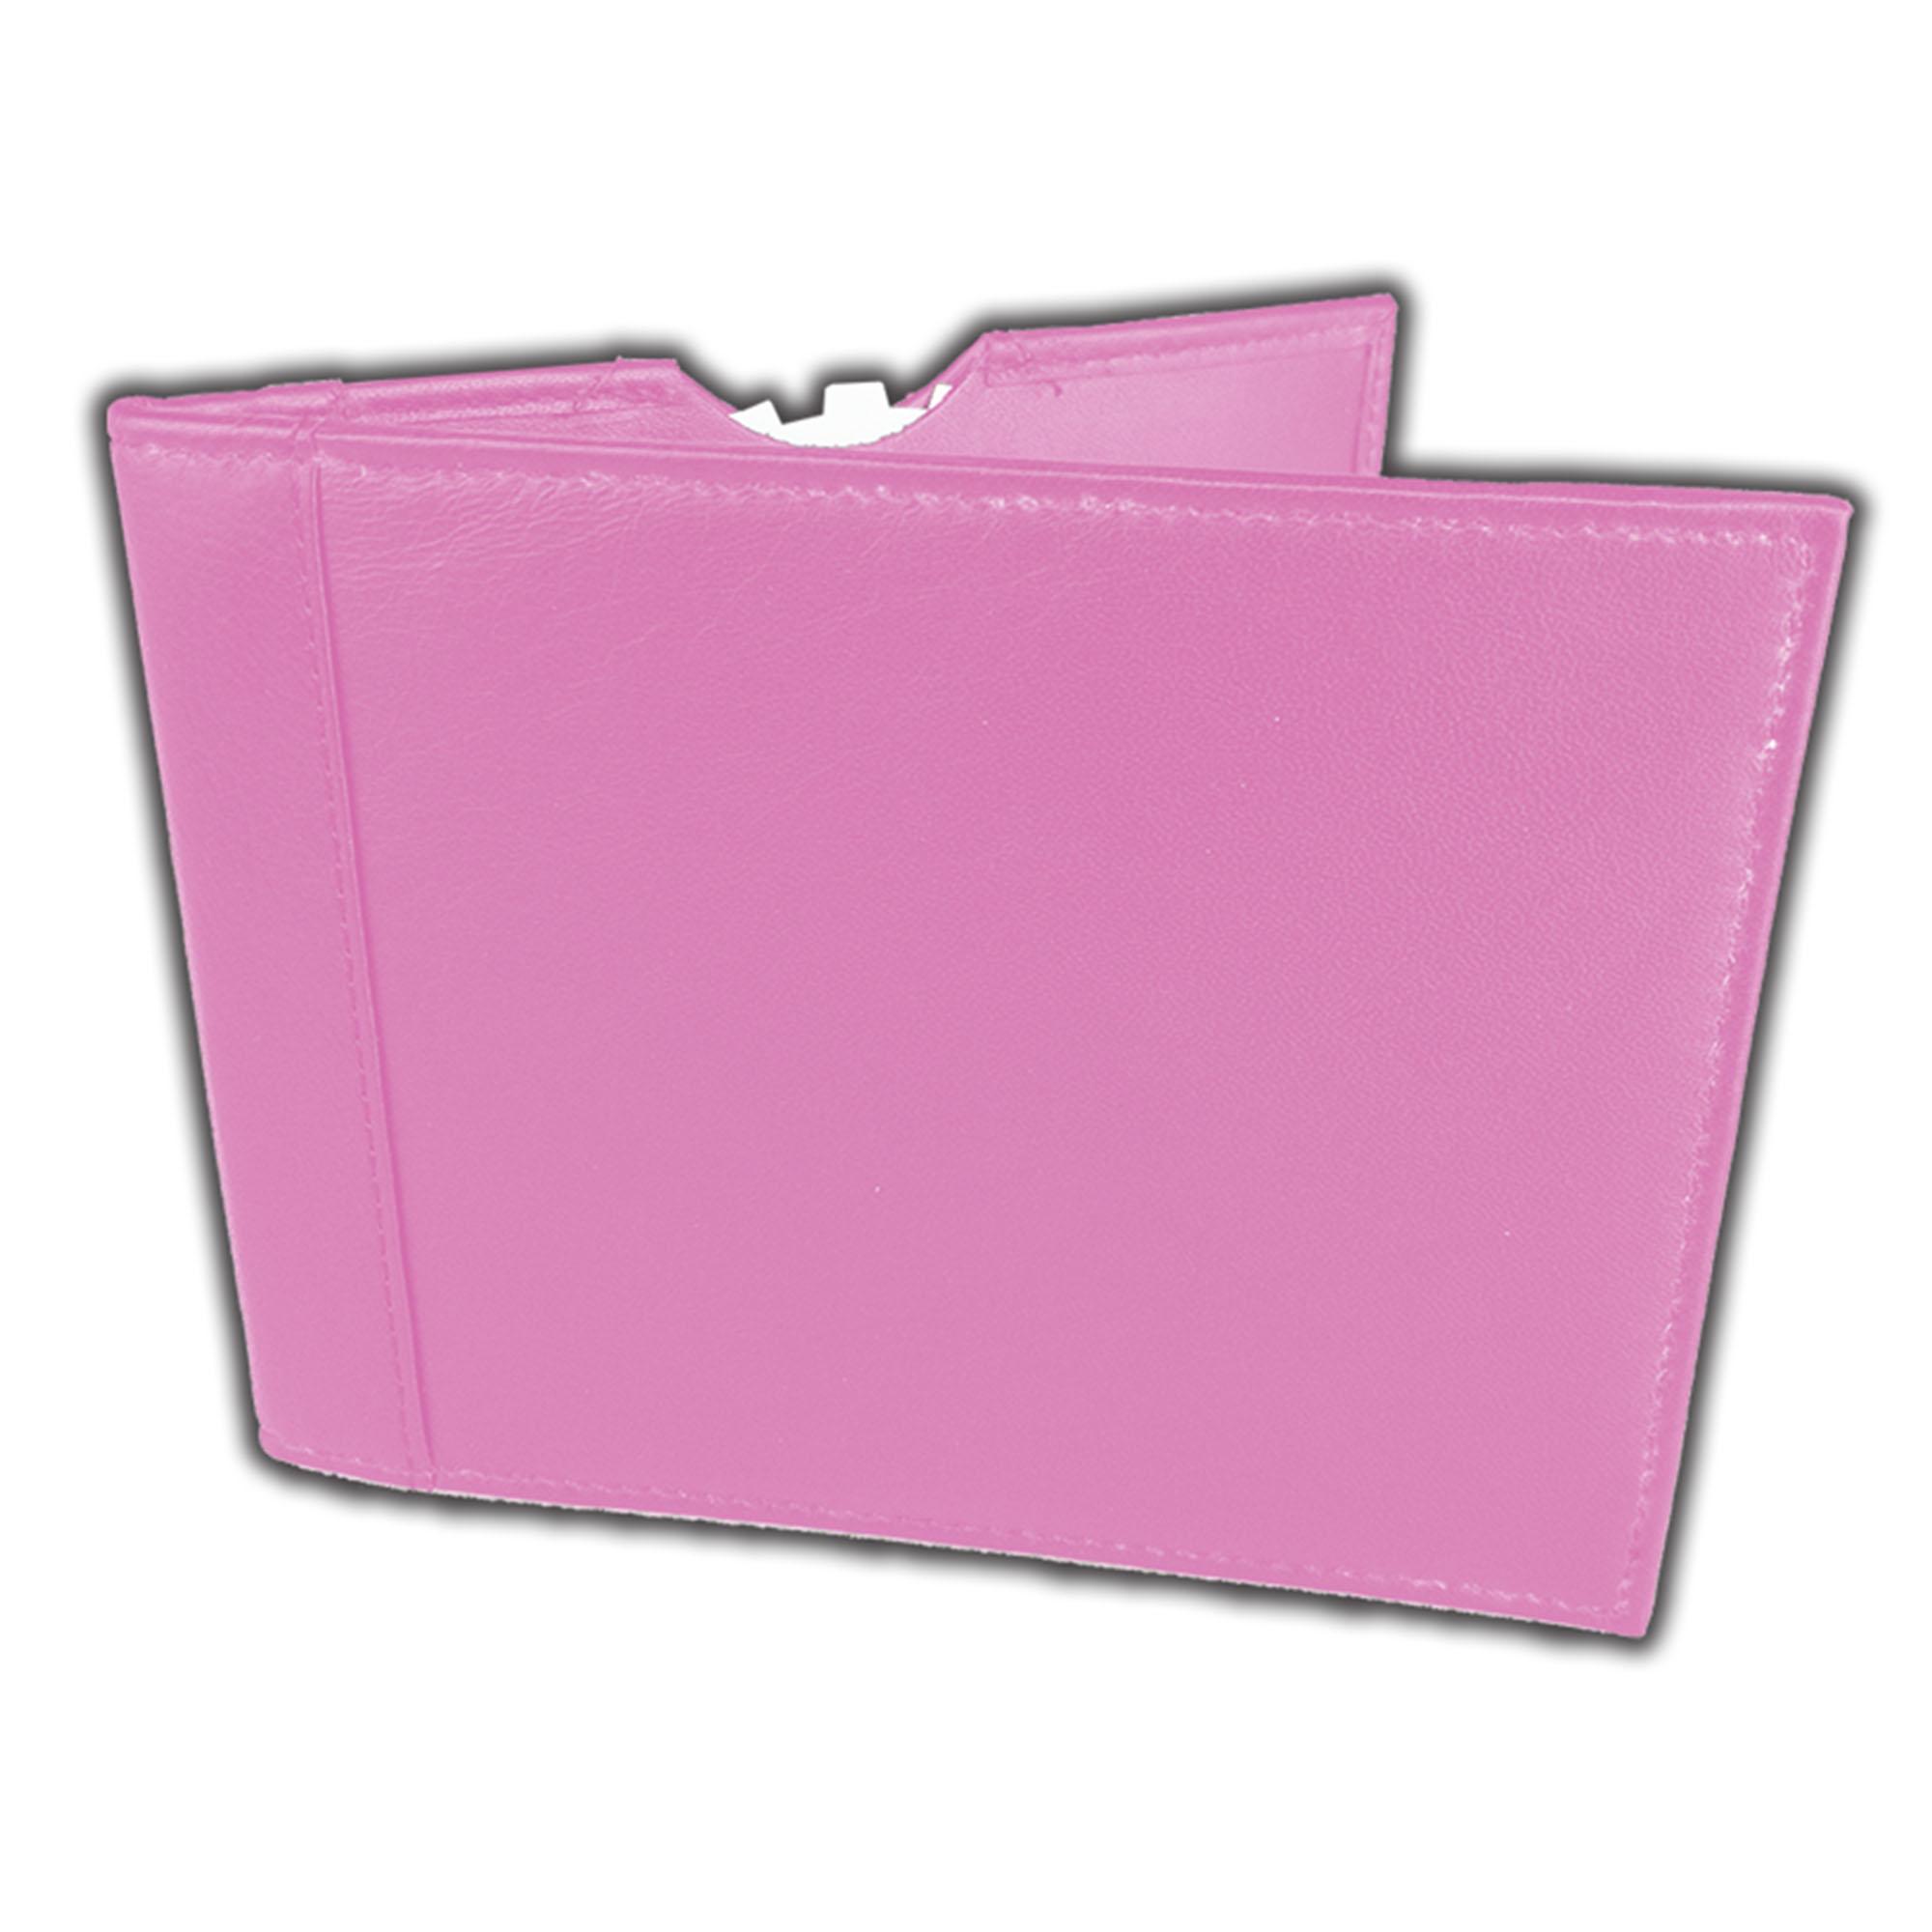 blue badge wallet holder Pink